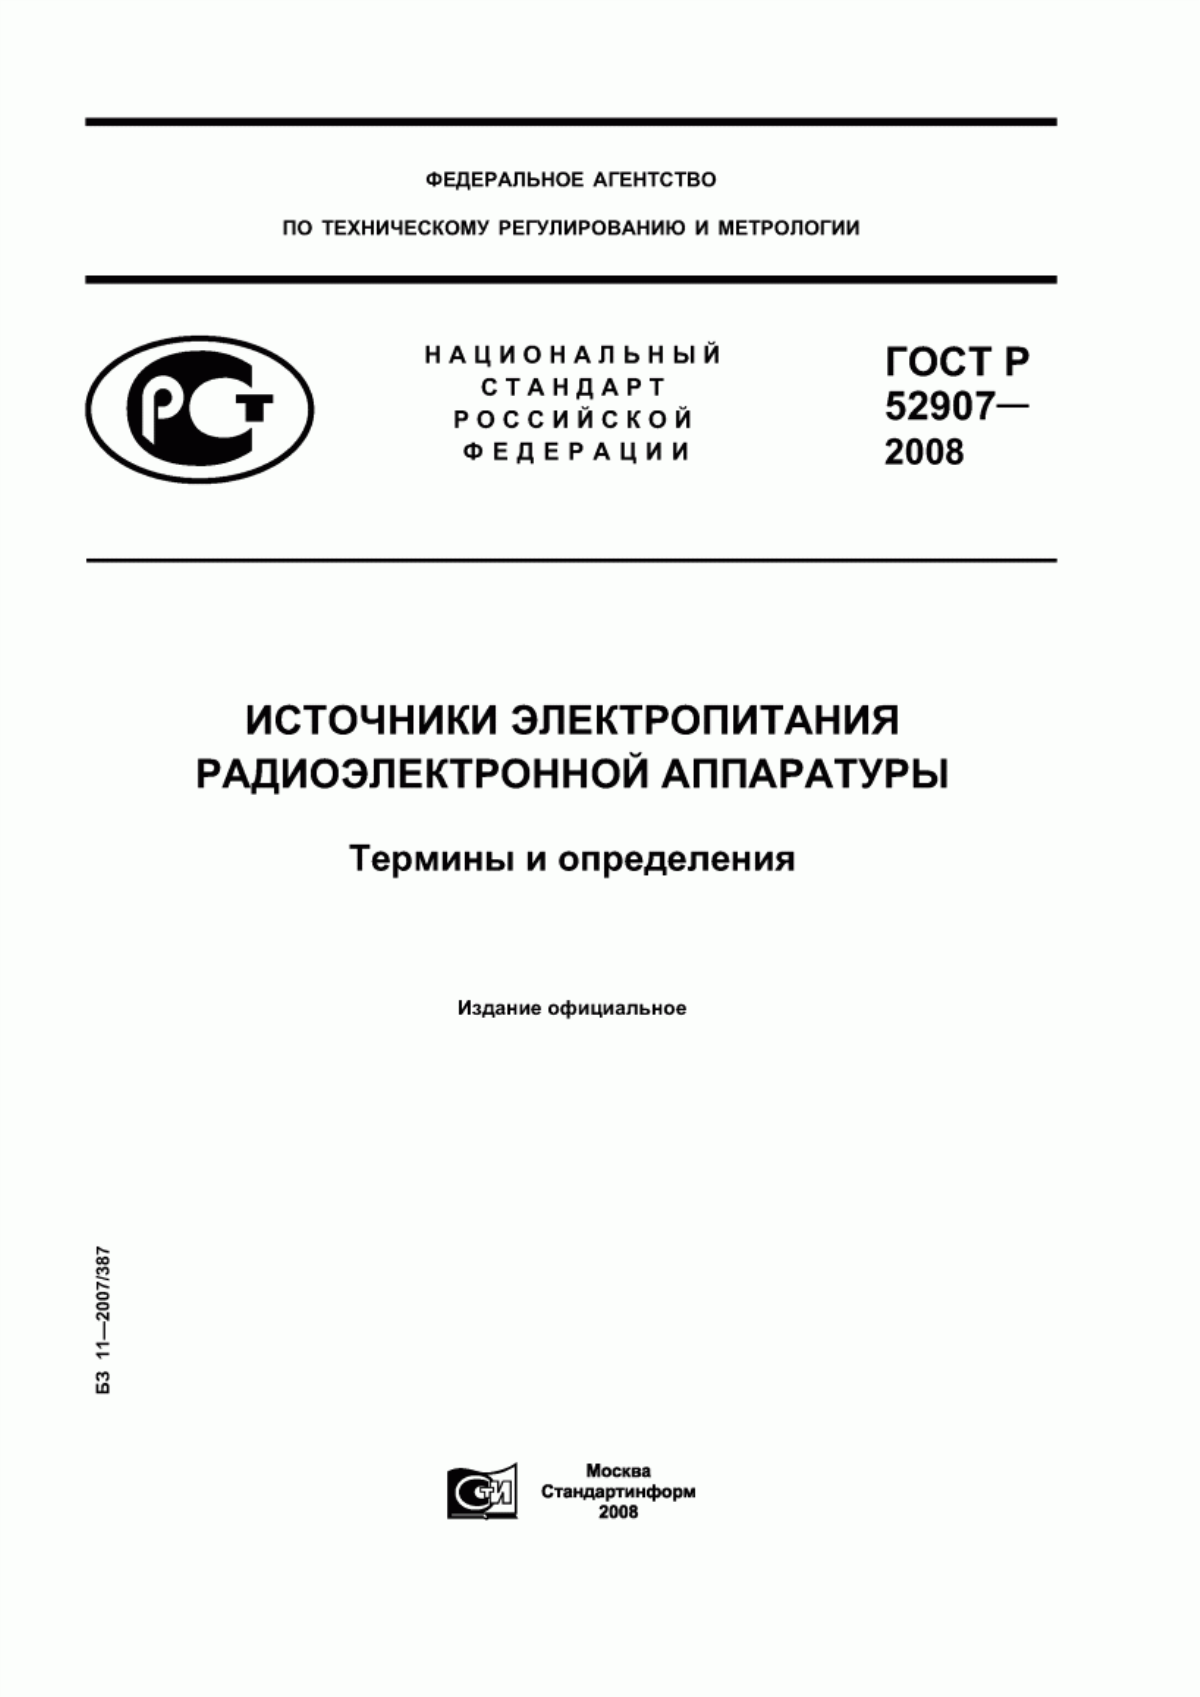 ГОСТ Р 52907-2008 Источники электропитания радиоэлектронной аппаратуры. Термины и определения